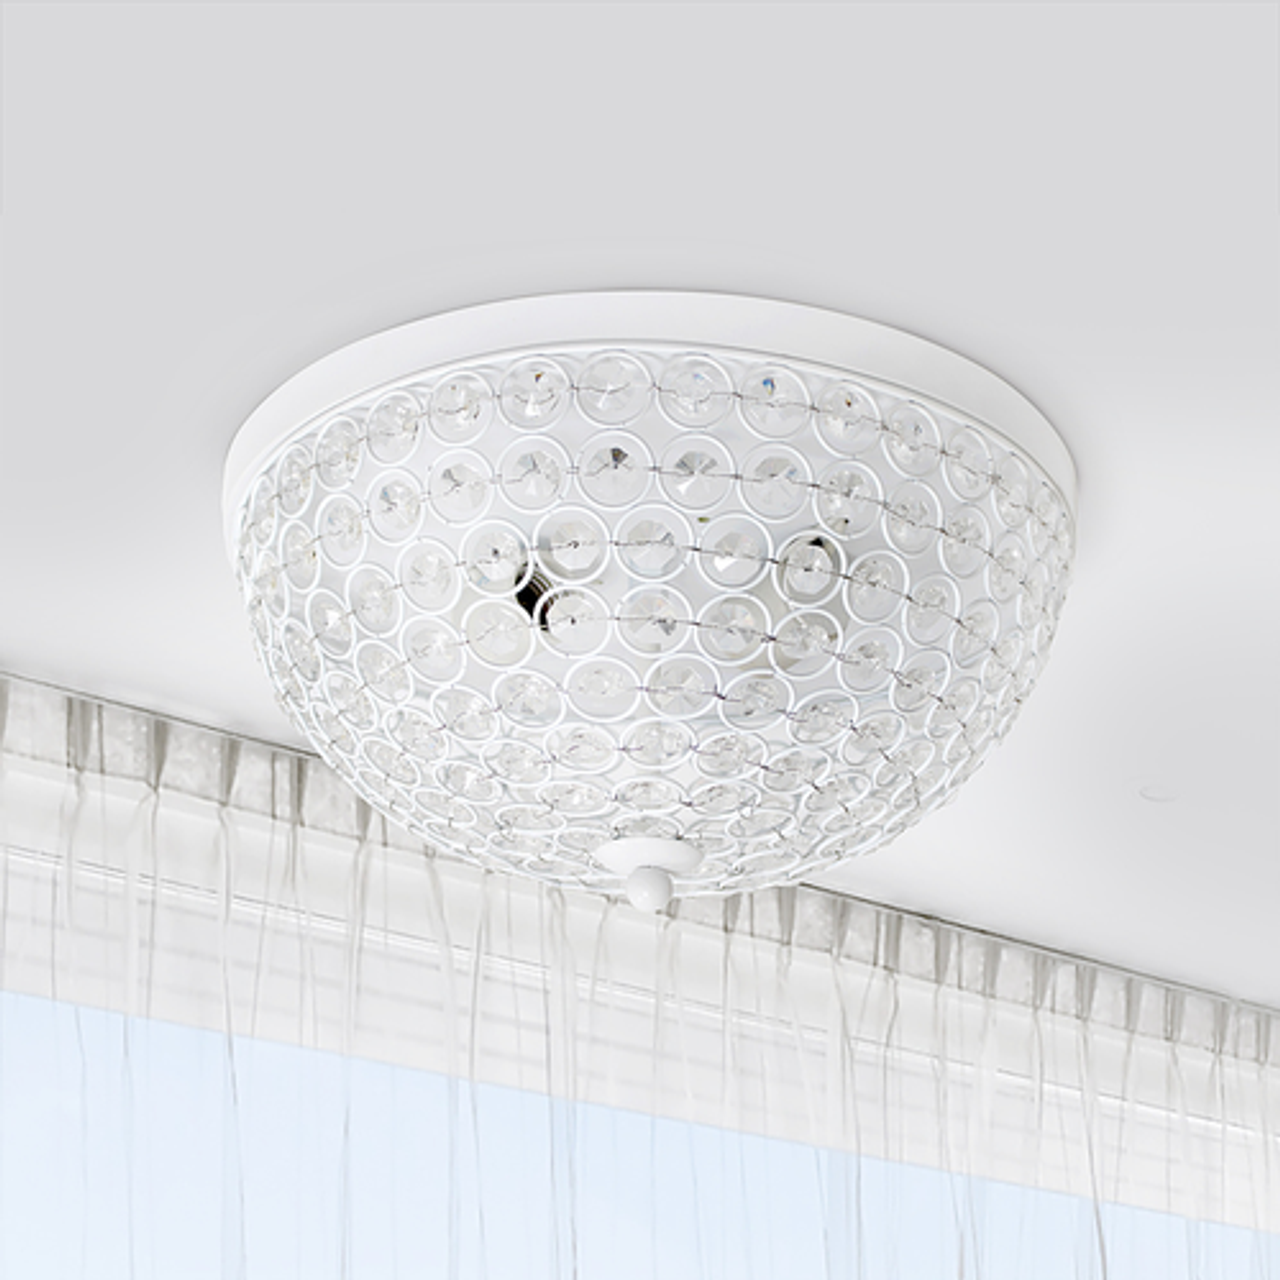 Lalia Home Crystal Glam 2 Light Ceiling Flush Mount 2 Pack, White - White